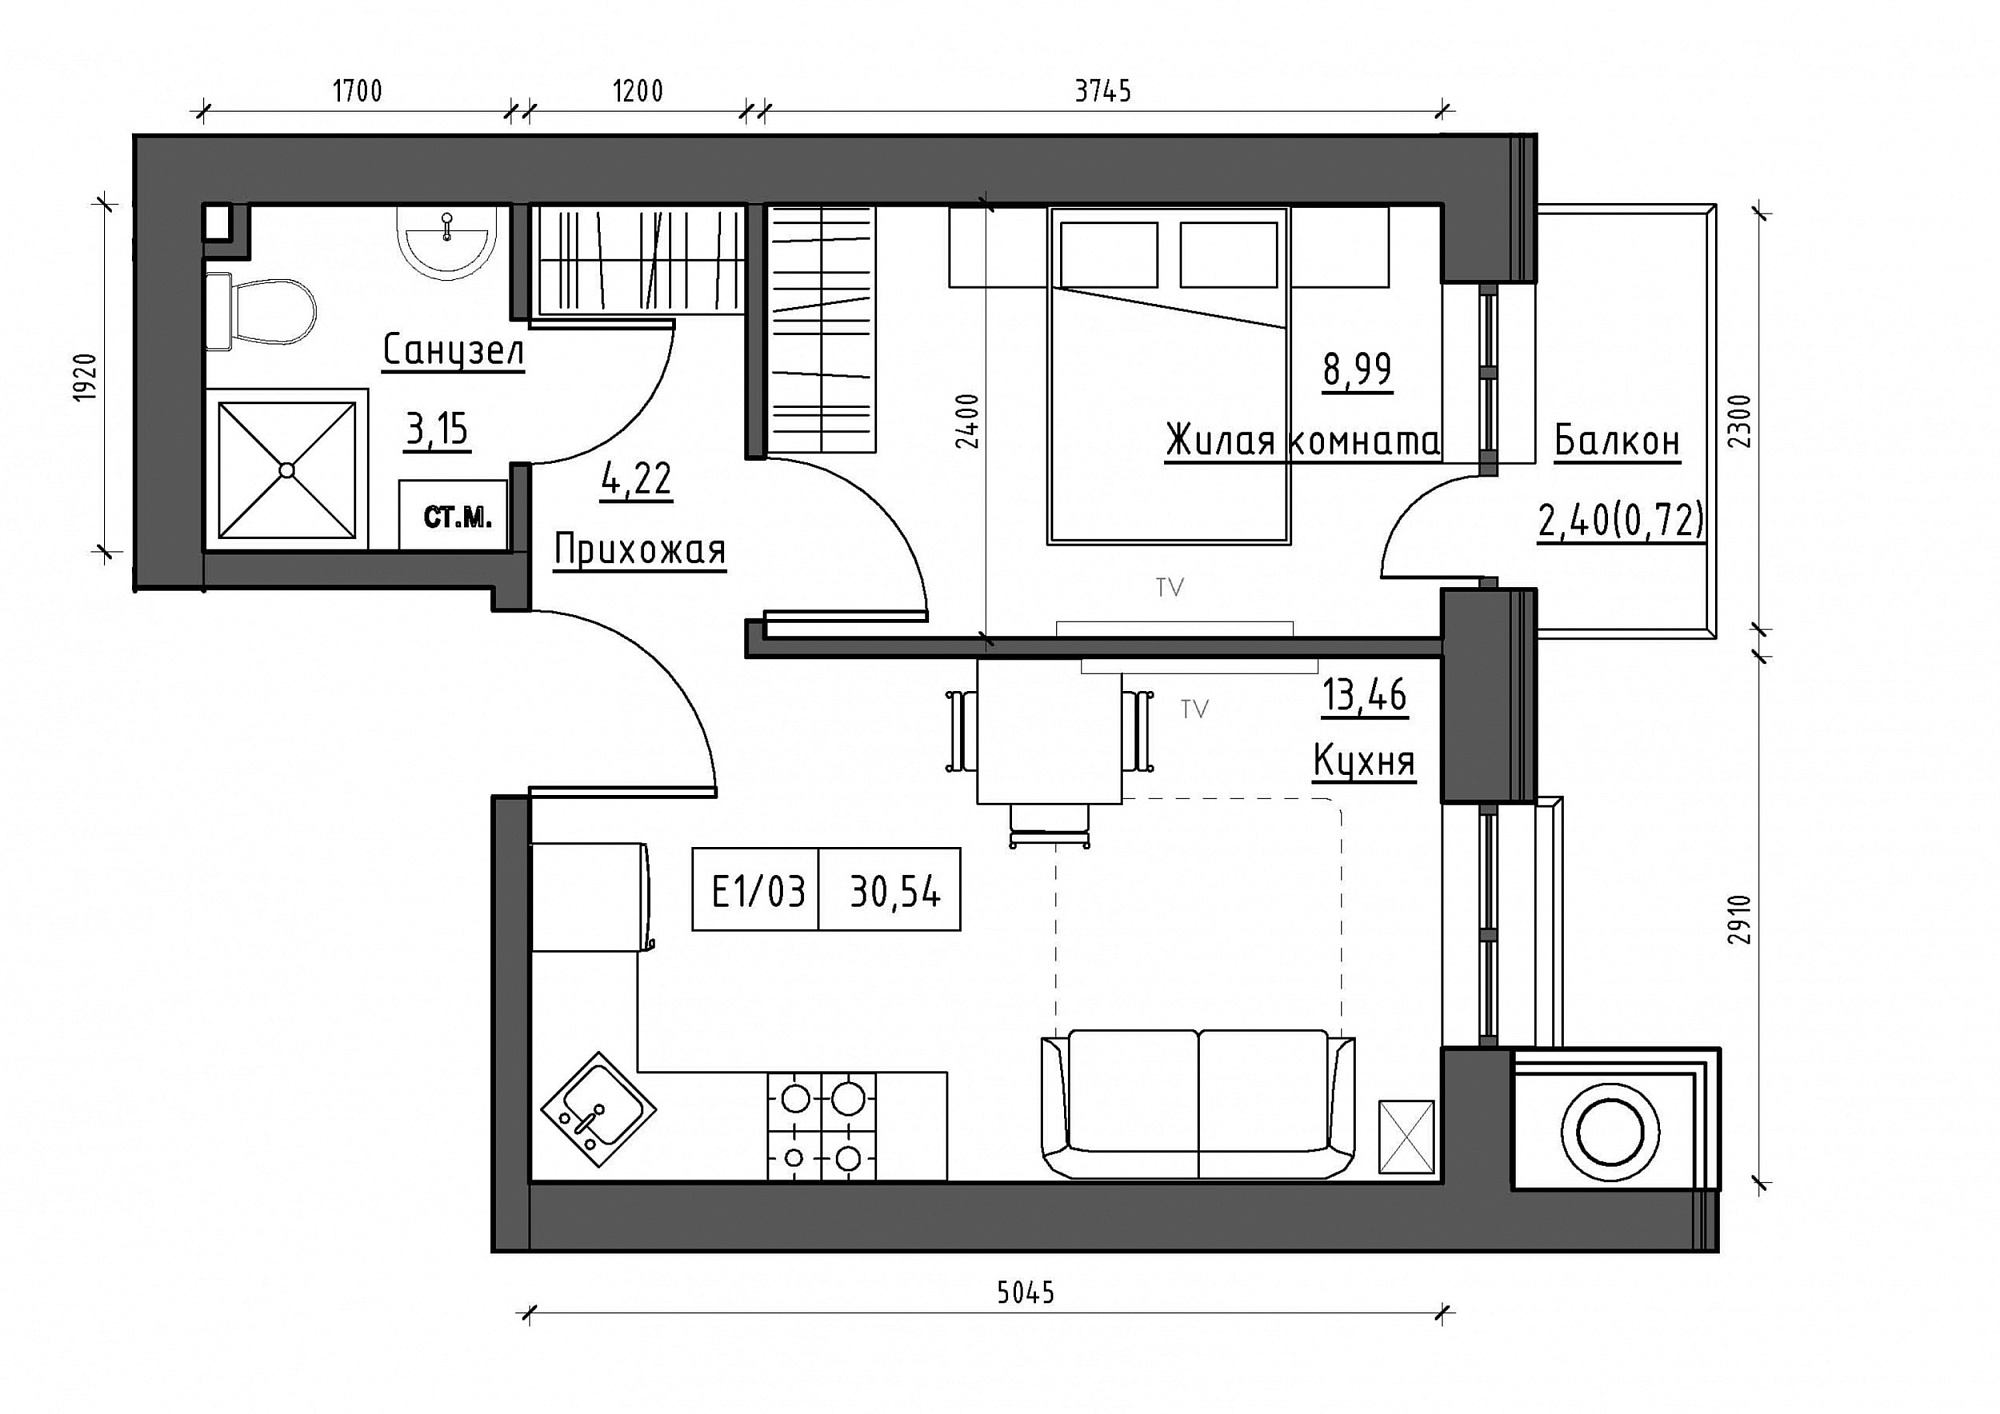 Планування 1-к квартира площею 30.54м2, KS-012-05/0016.